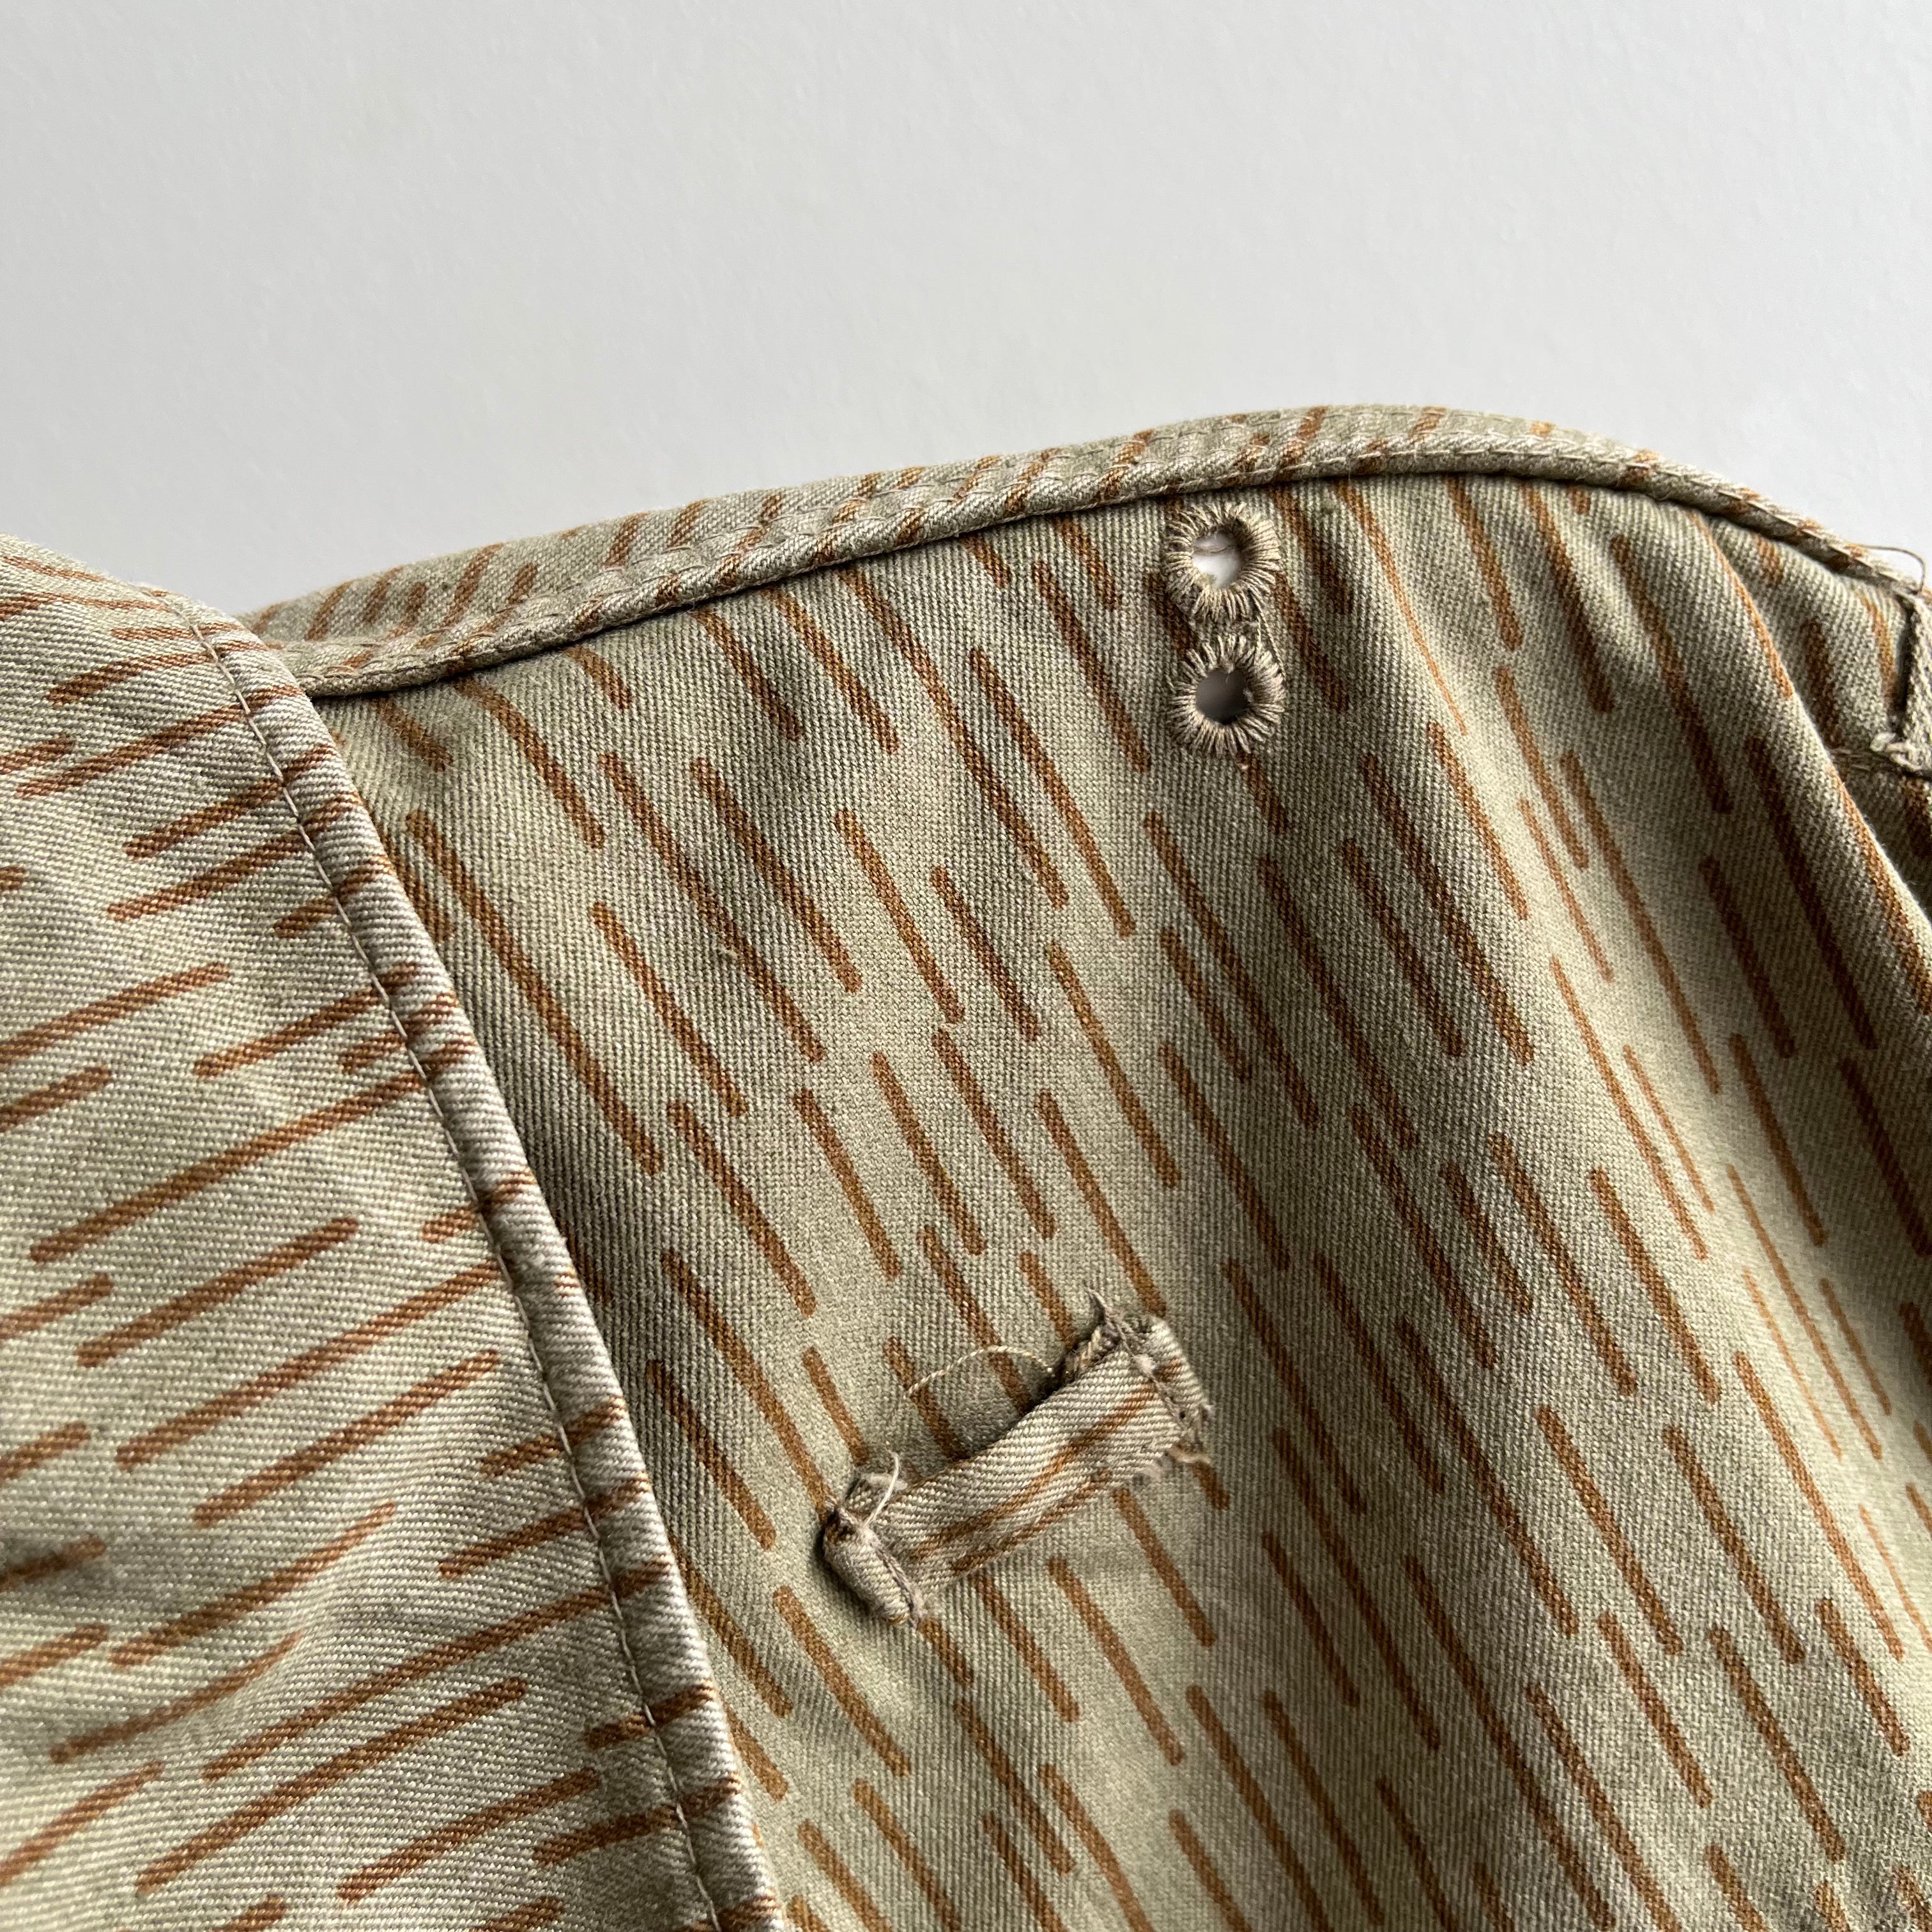 1990s Czech Camo Shirt/Jacket